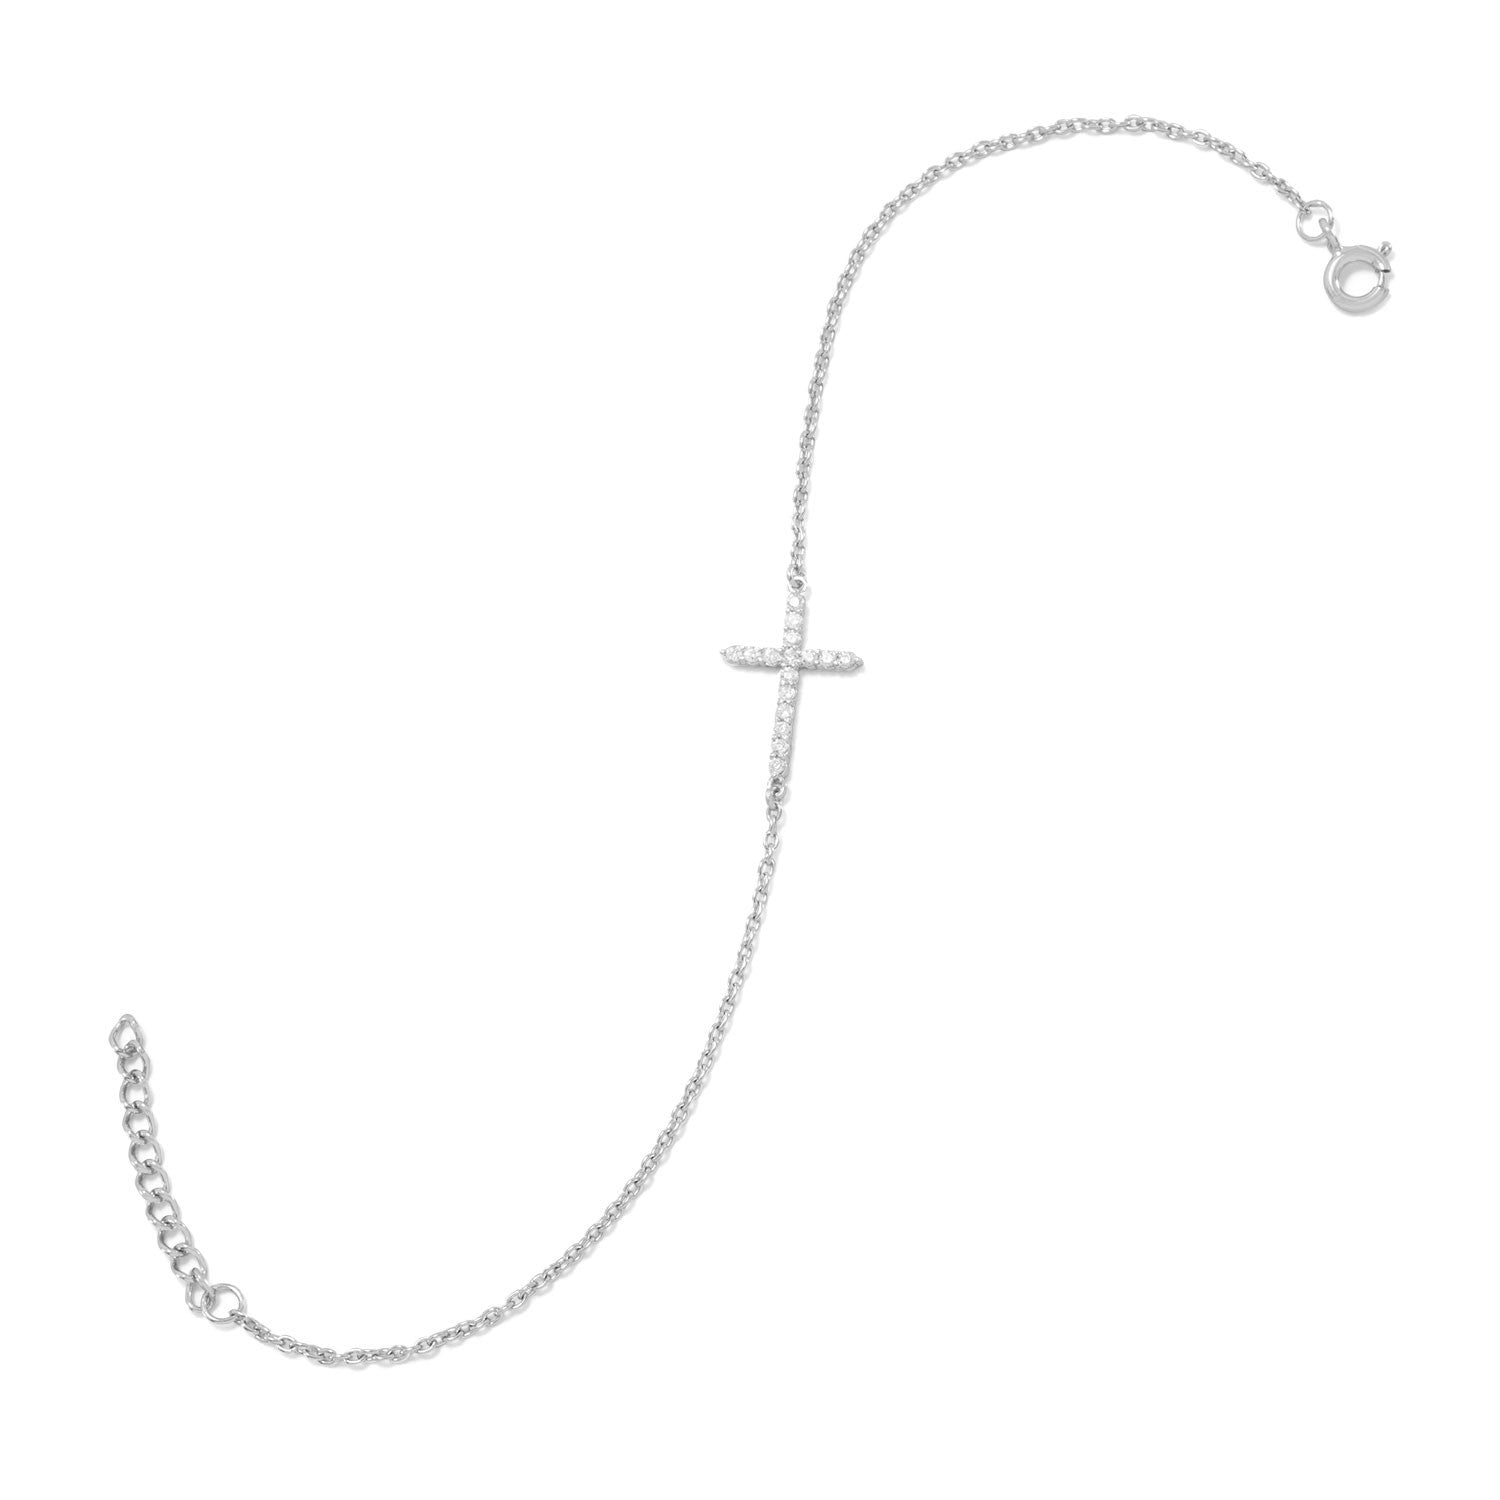 7" + 1" Rhodium Plated CZ Sideways Cross Bracelet